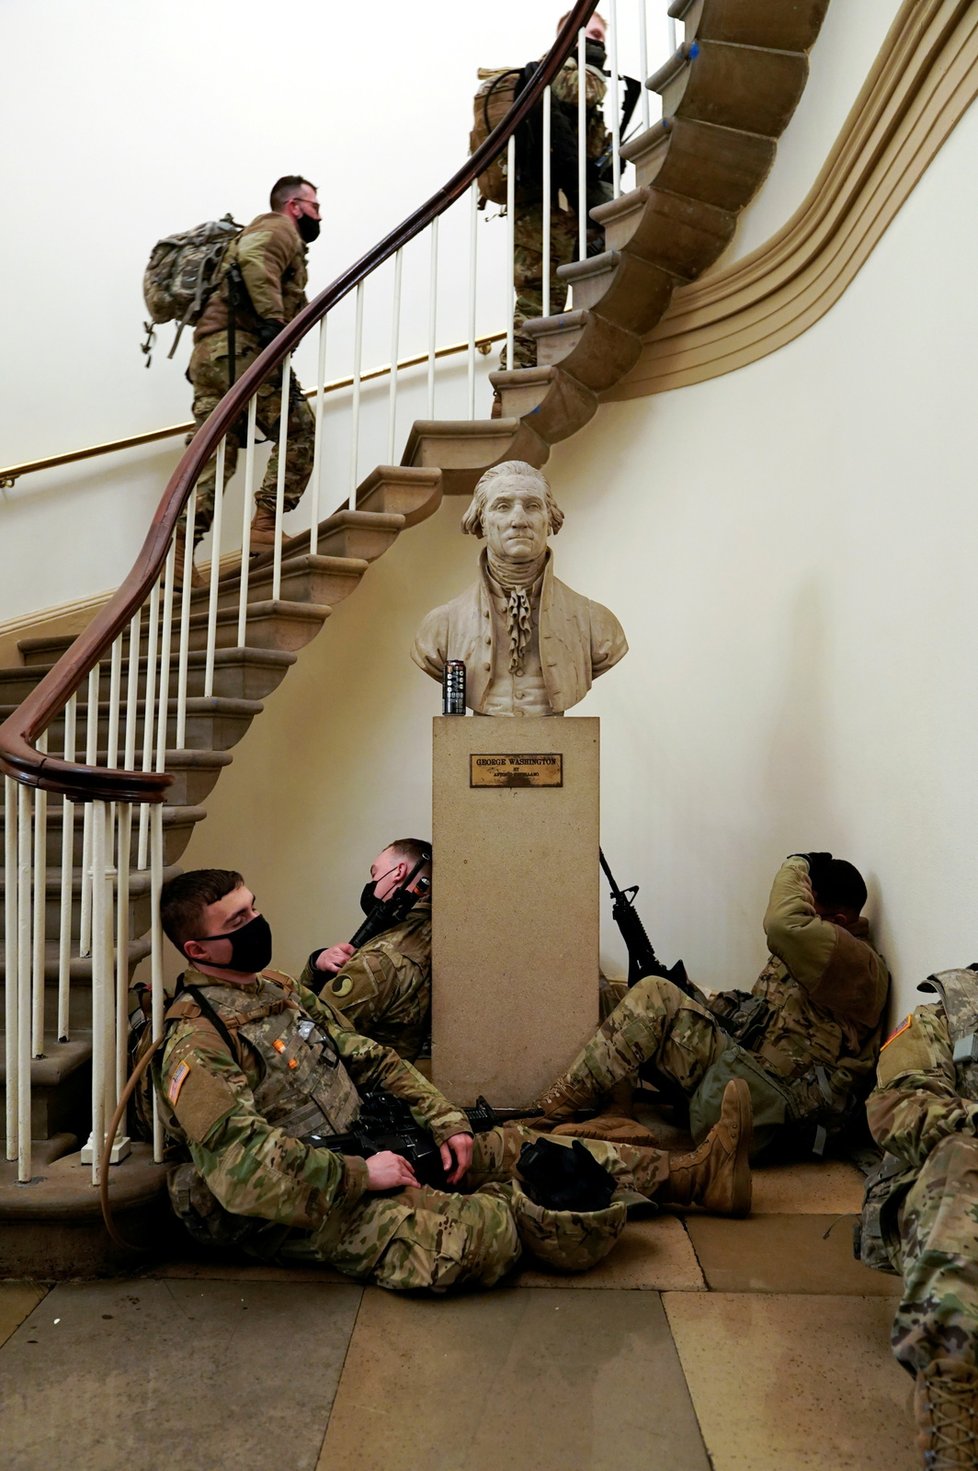 Vojáci Národní gardy před a v Kapitolu před jednáním o impeachmentu, (13.01.2021).